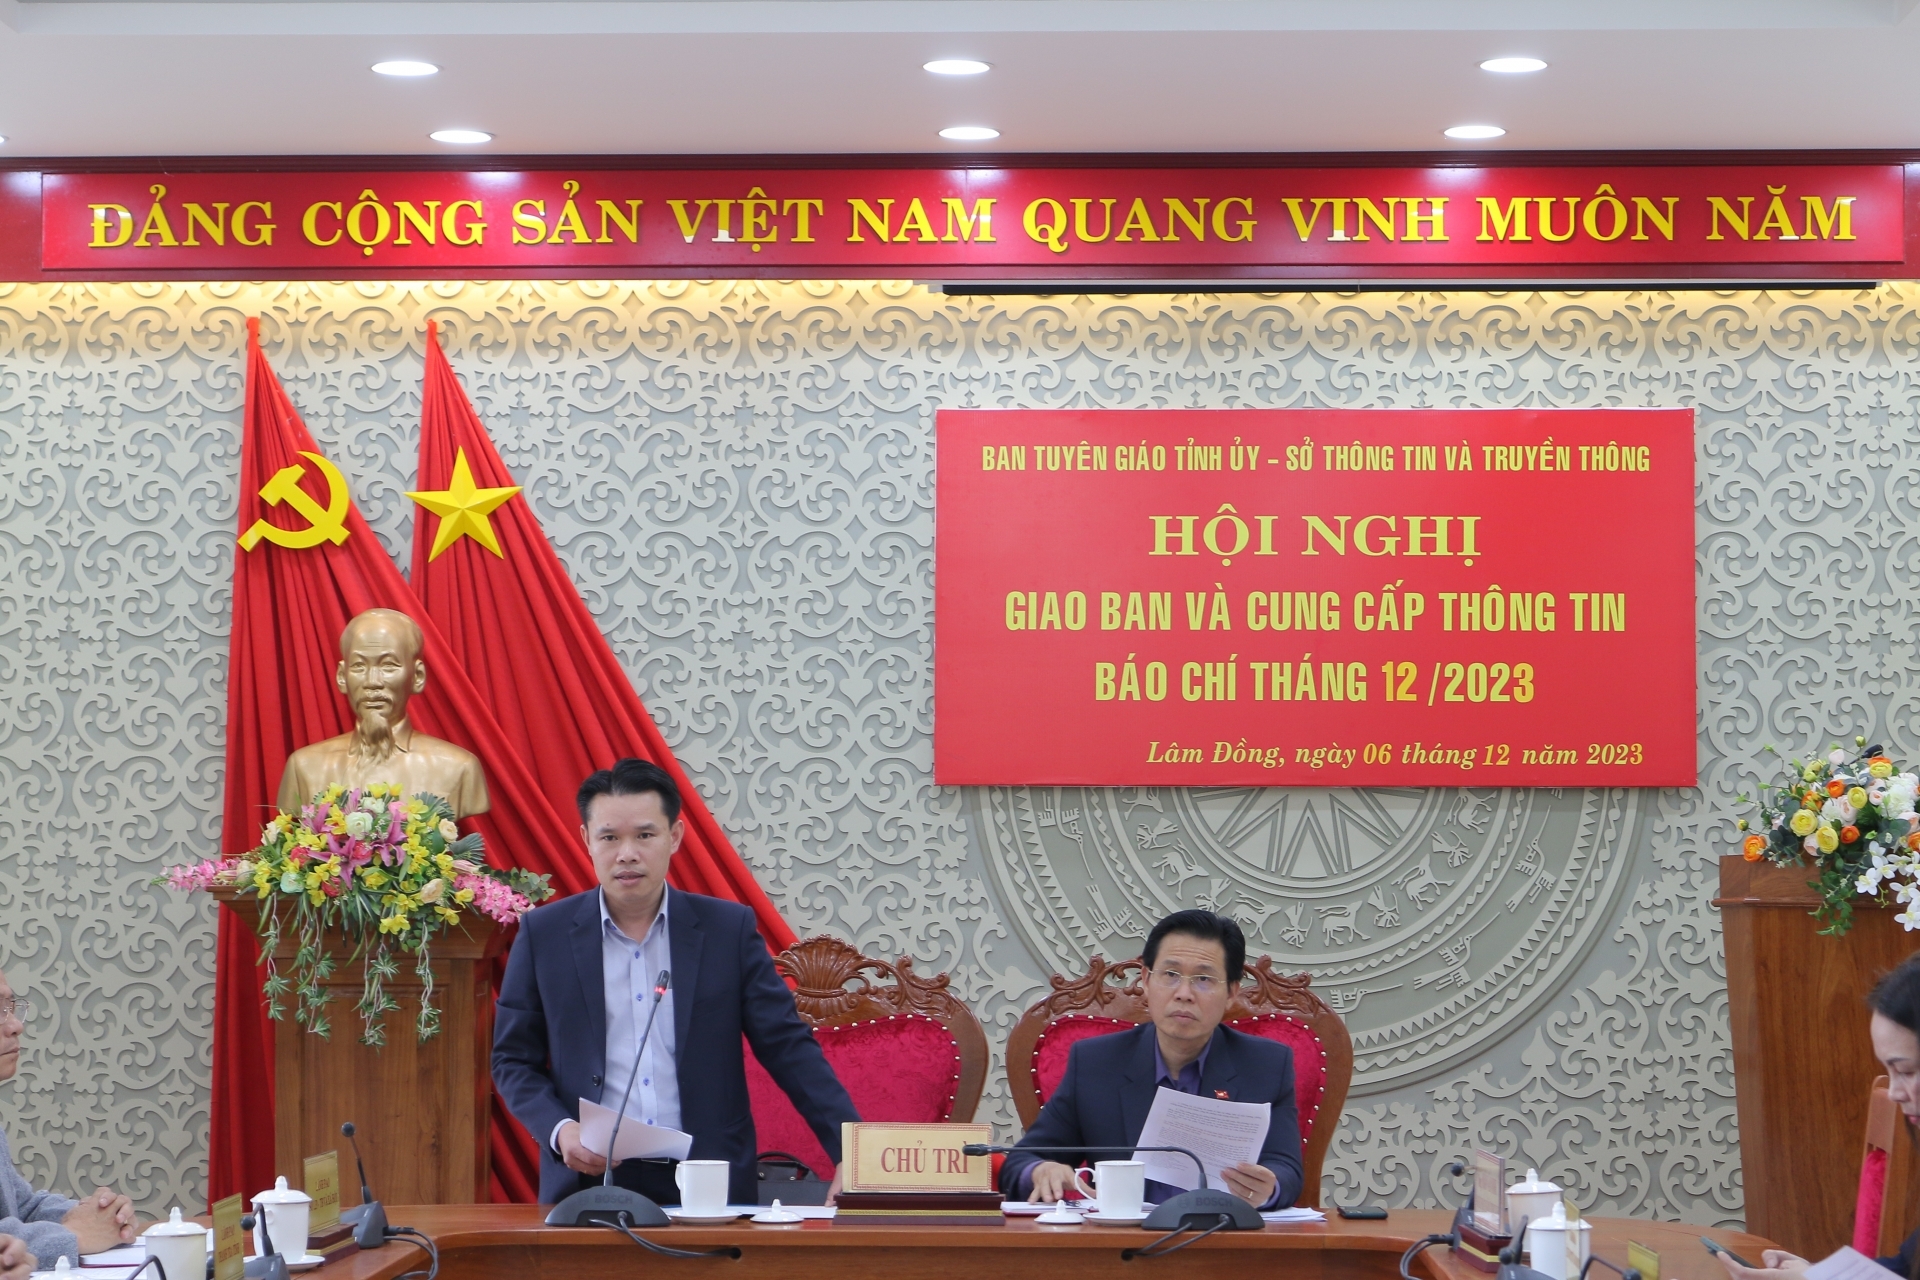 Lâm Đồng: Hội nghị giao ban báo chí tháng 12 năm 2023